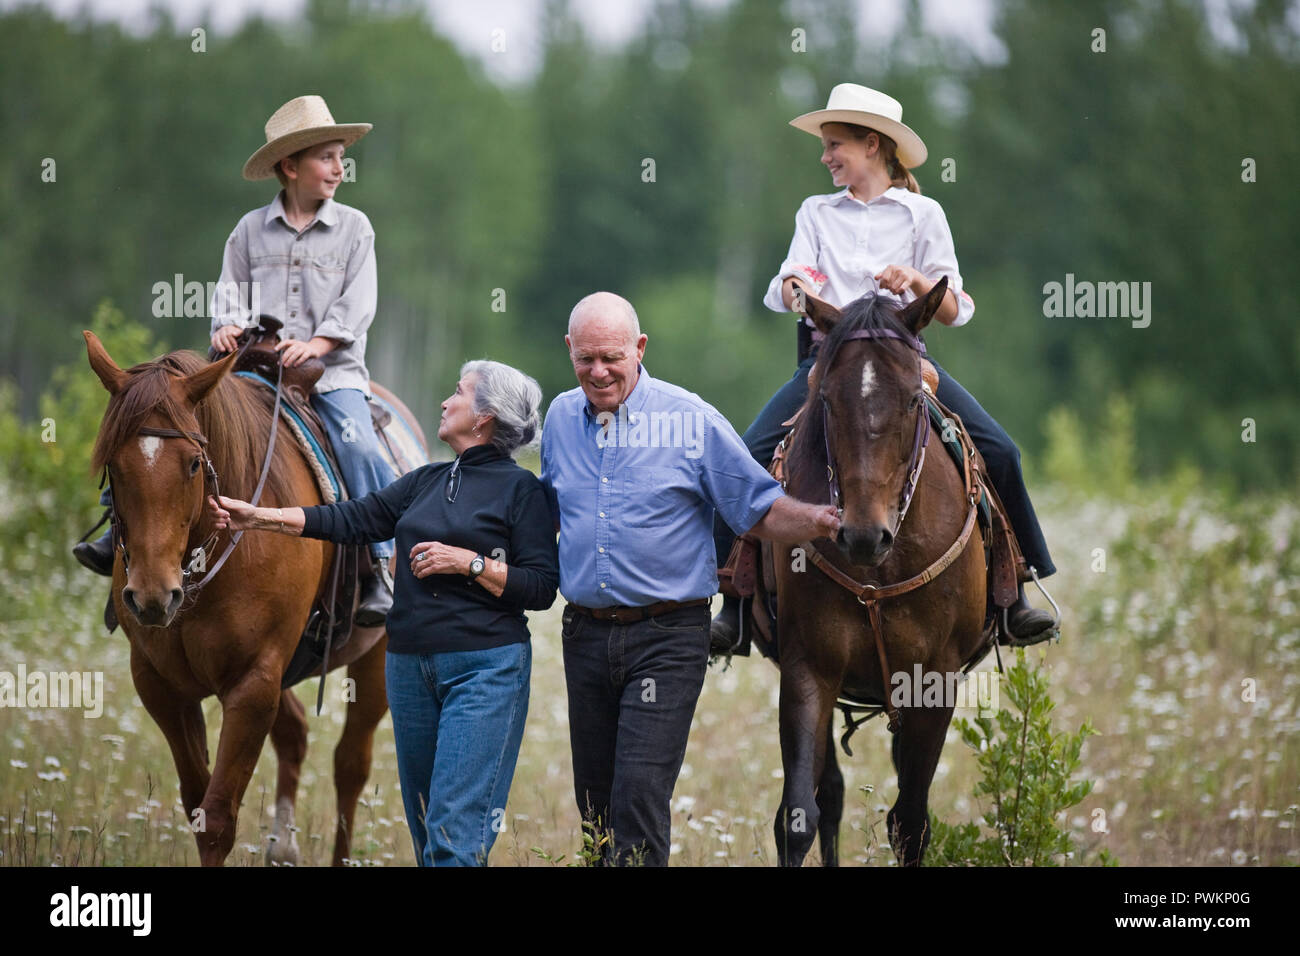 Grandparents leading horses ridden by grandchildren Stock Photo